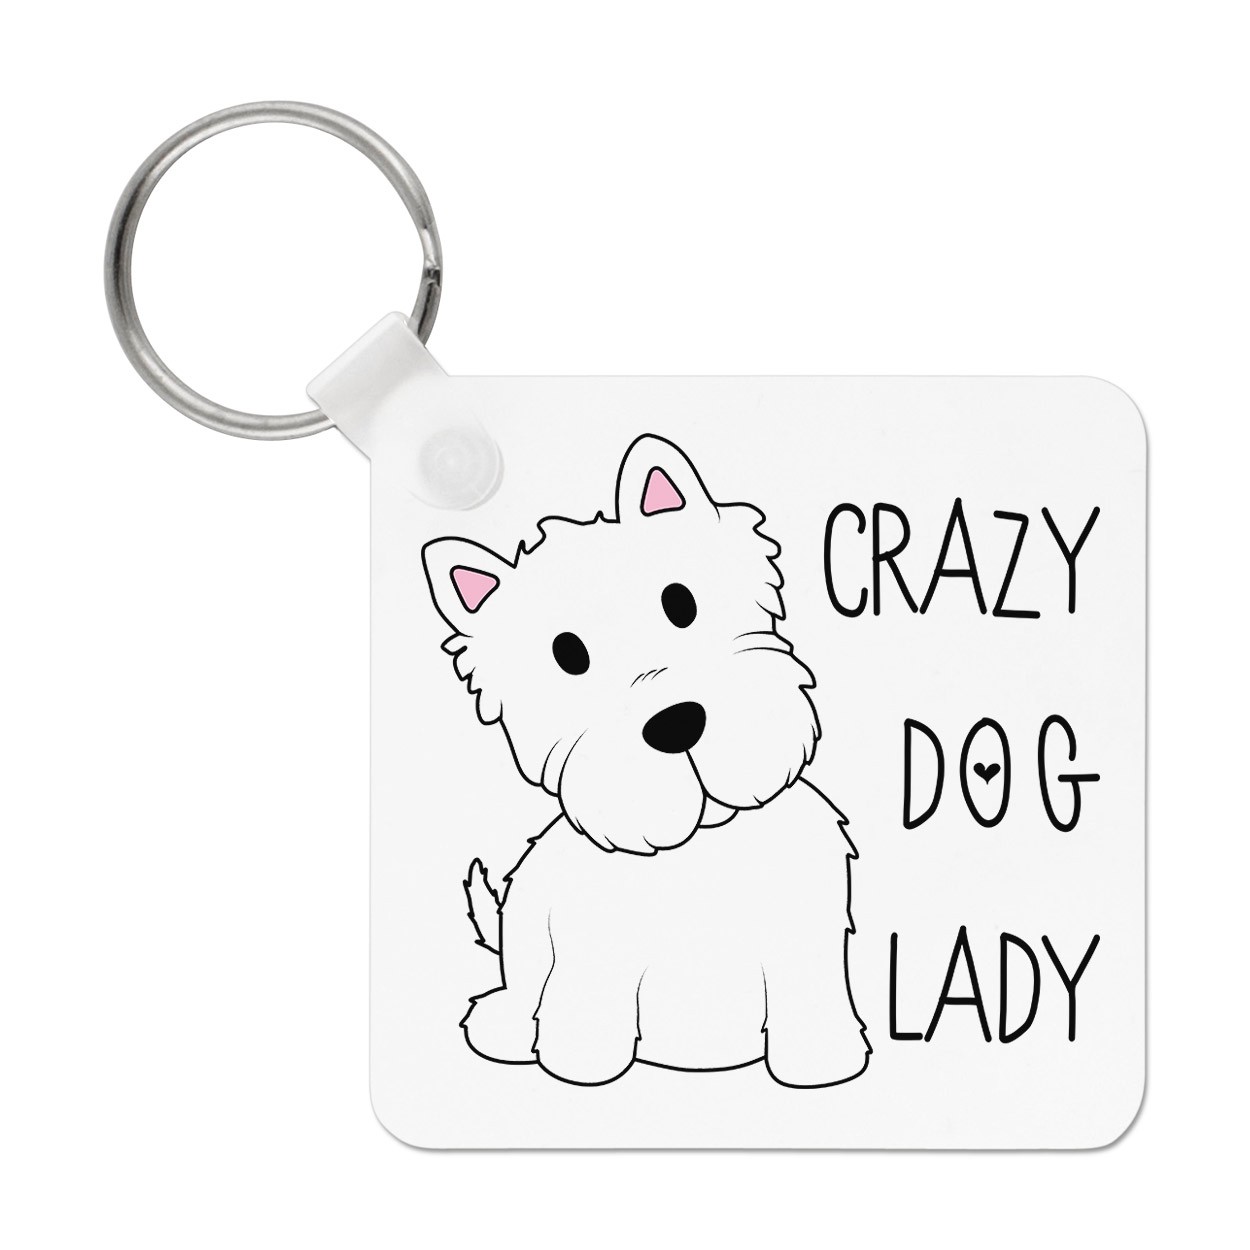 Crazy Dog Lady Keyring Key Chain